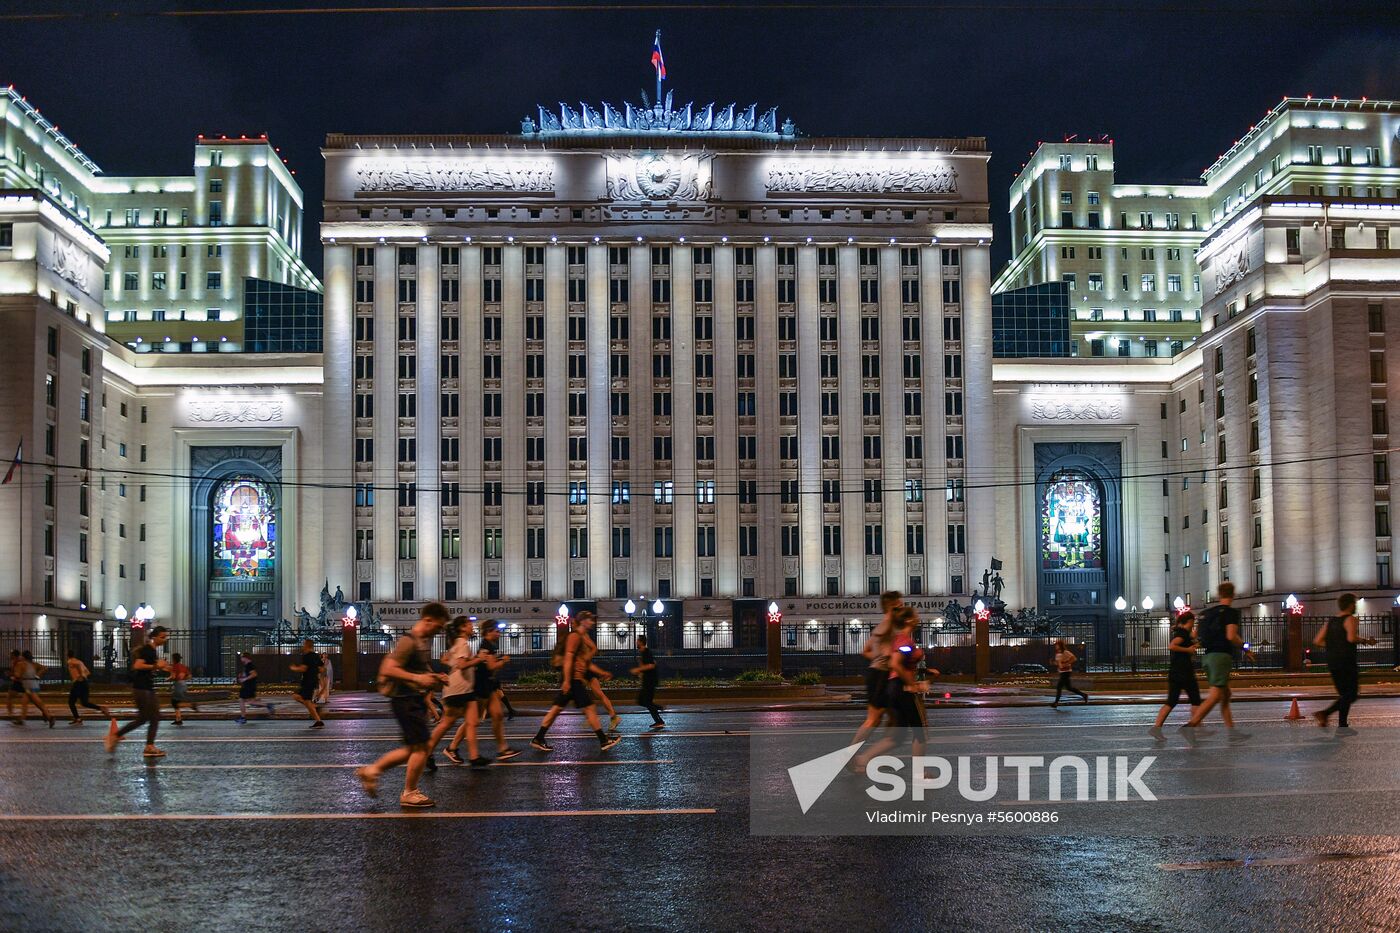 Night run in Moscow